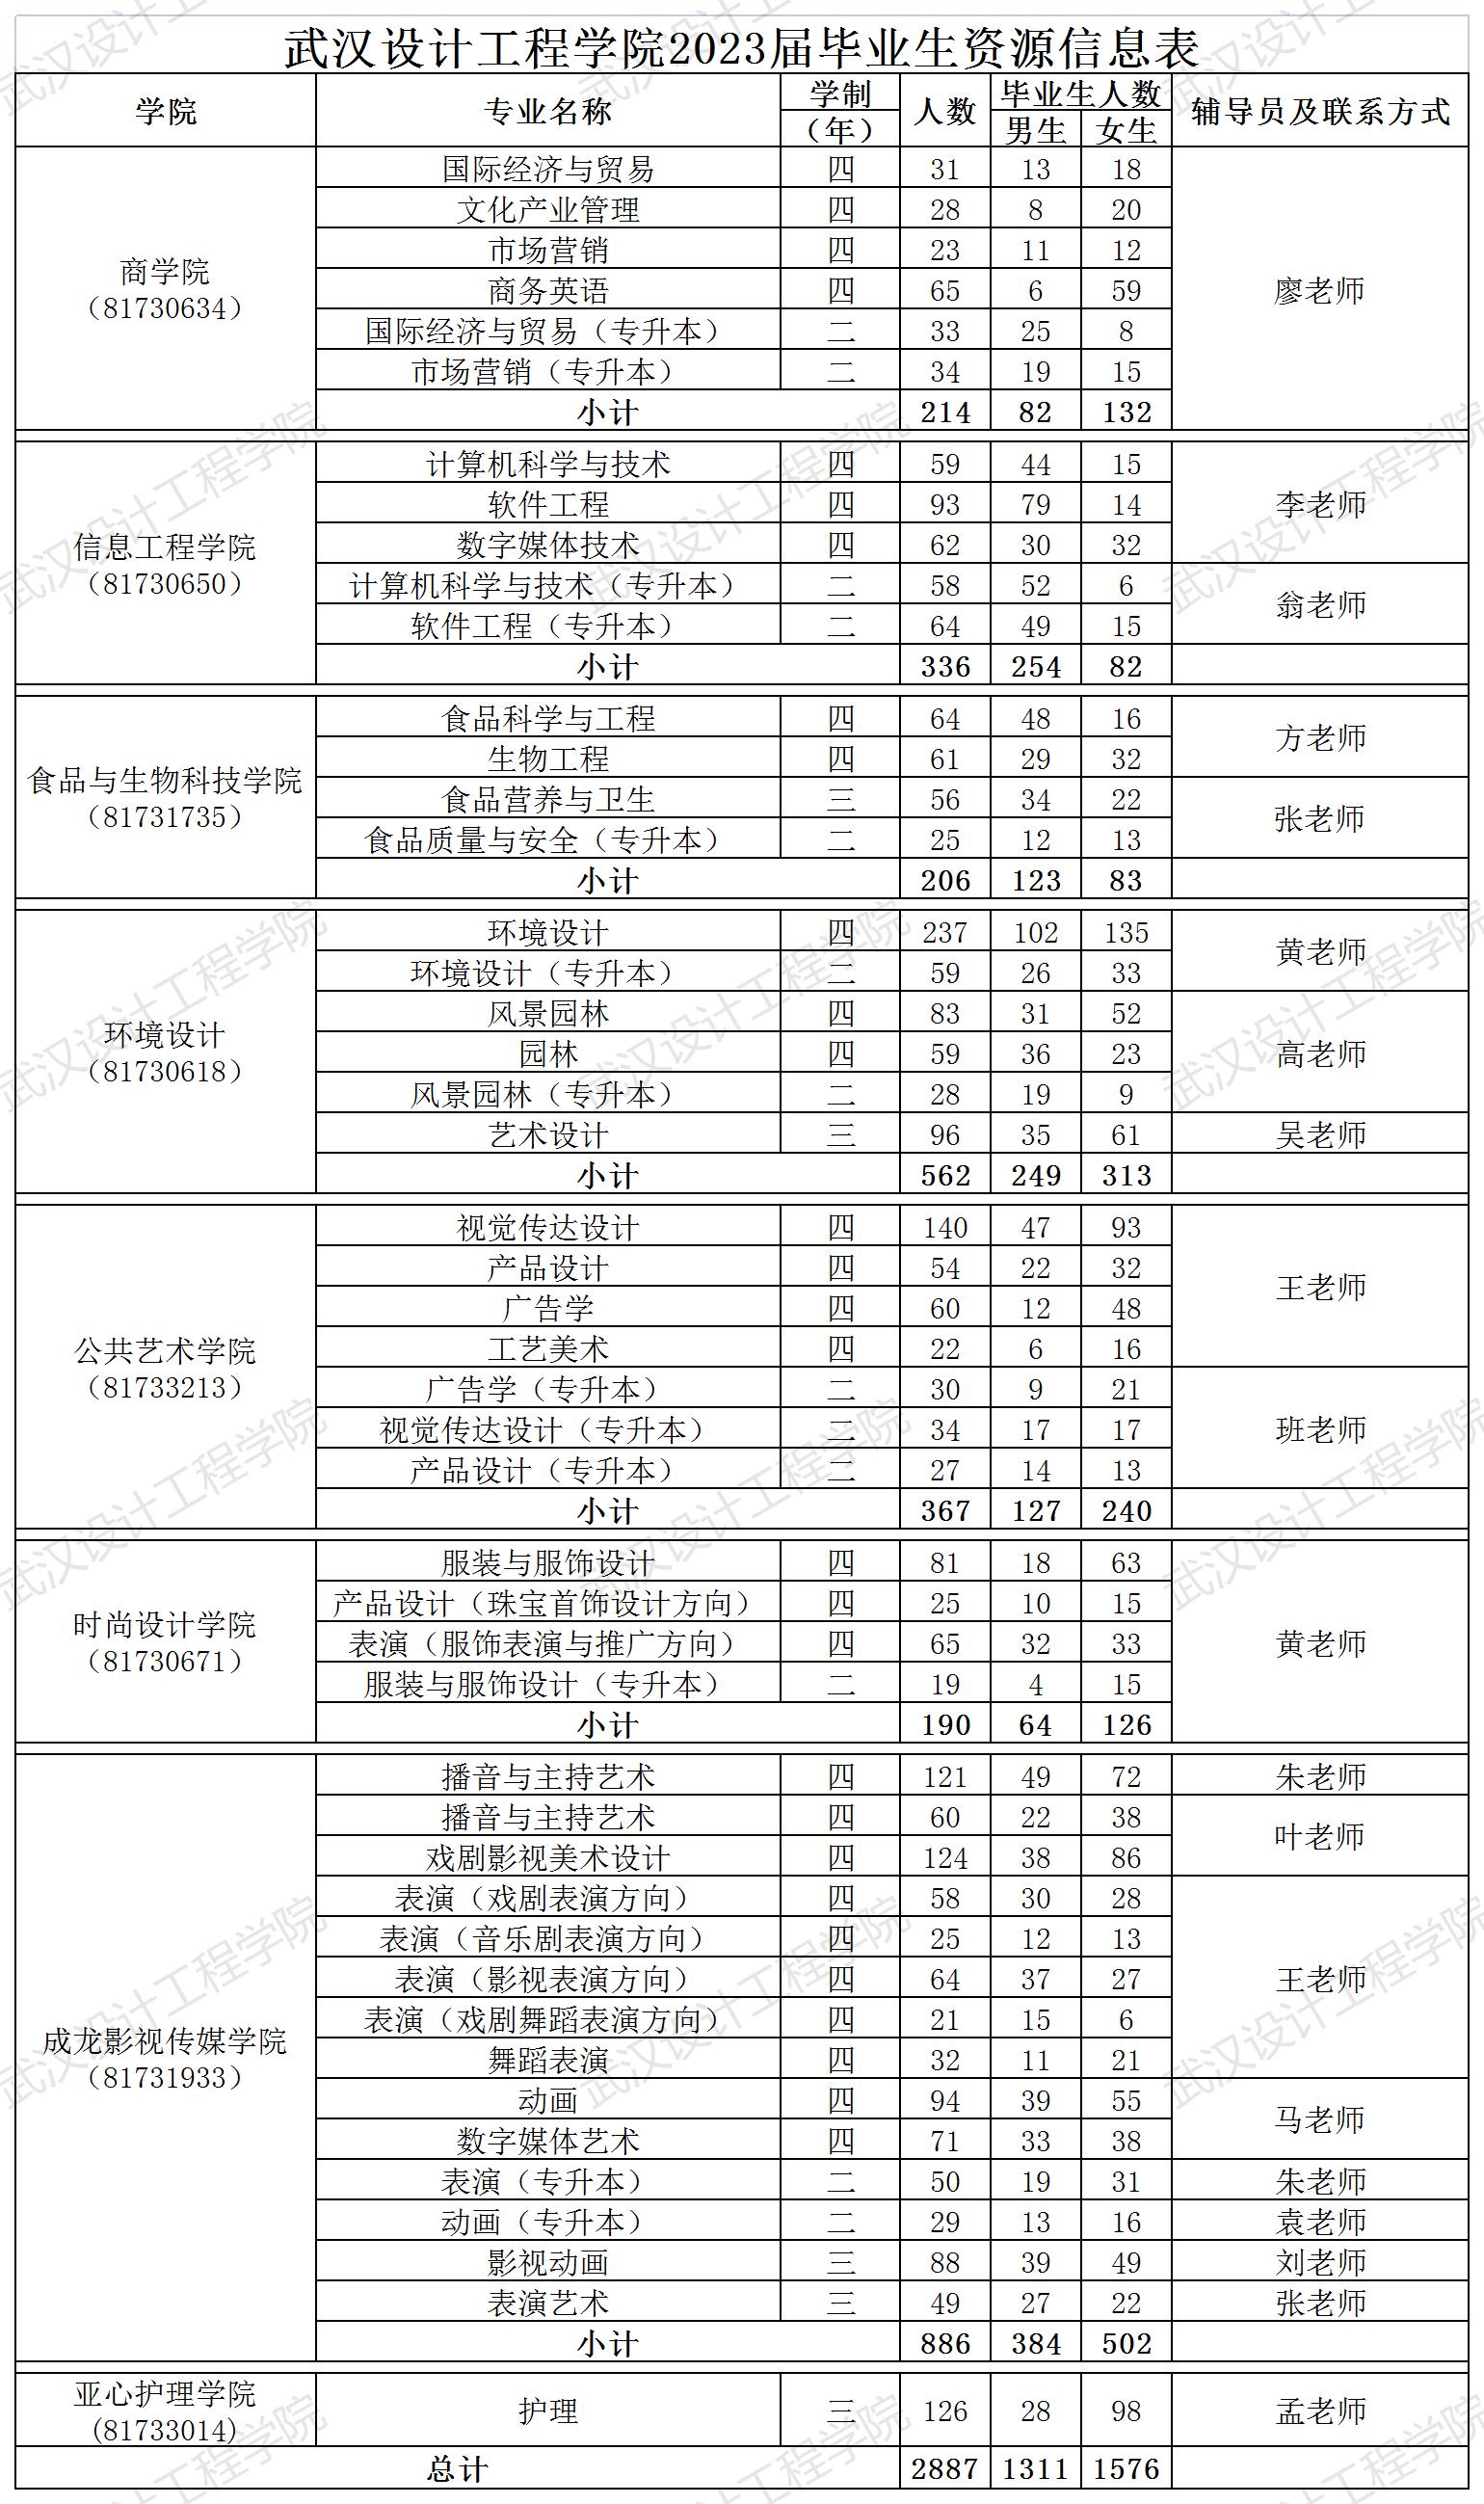 武汉设计工程学院2023届毕业生辅导员联系表_Sheet3.jpg